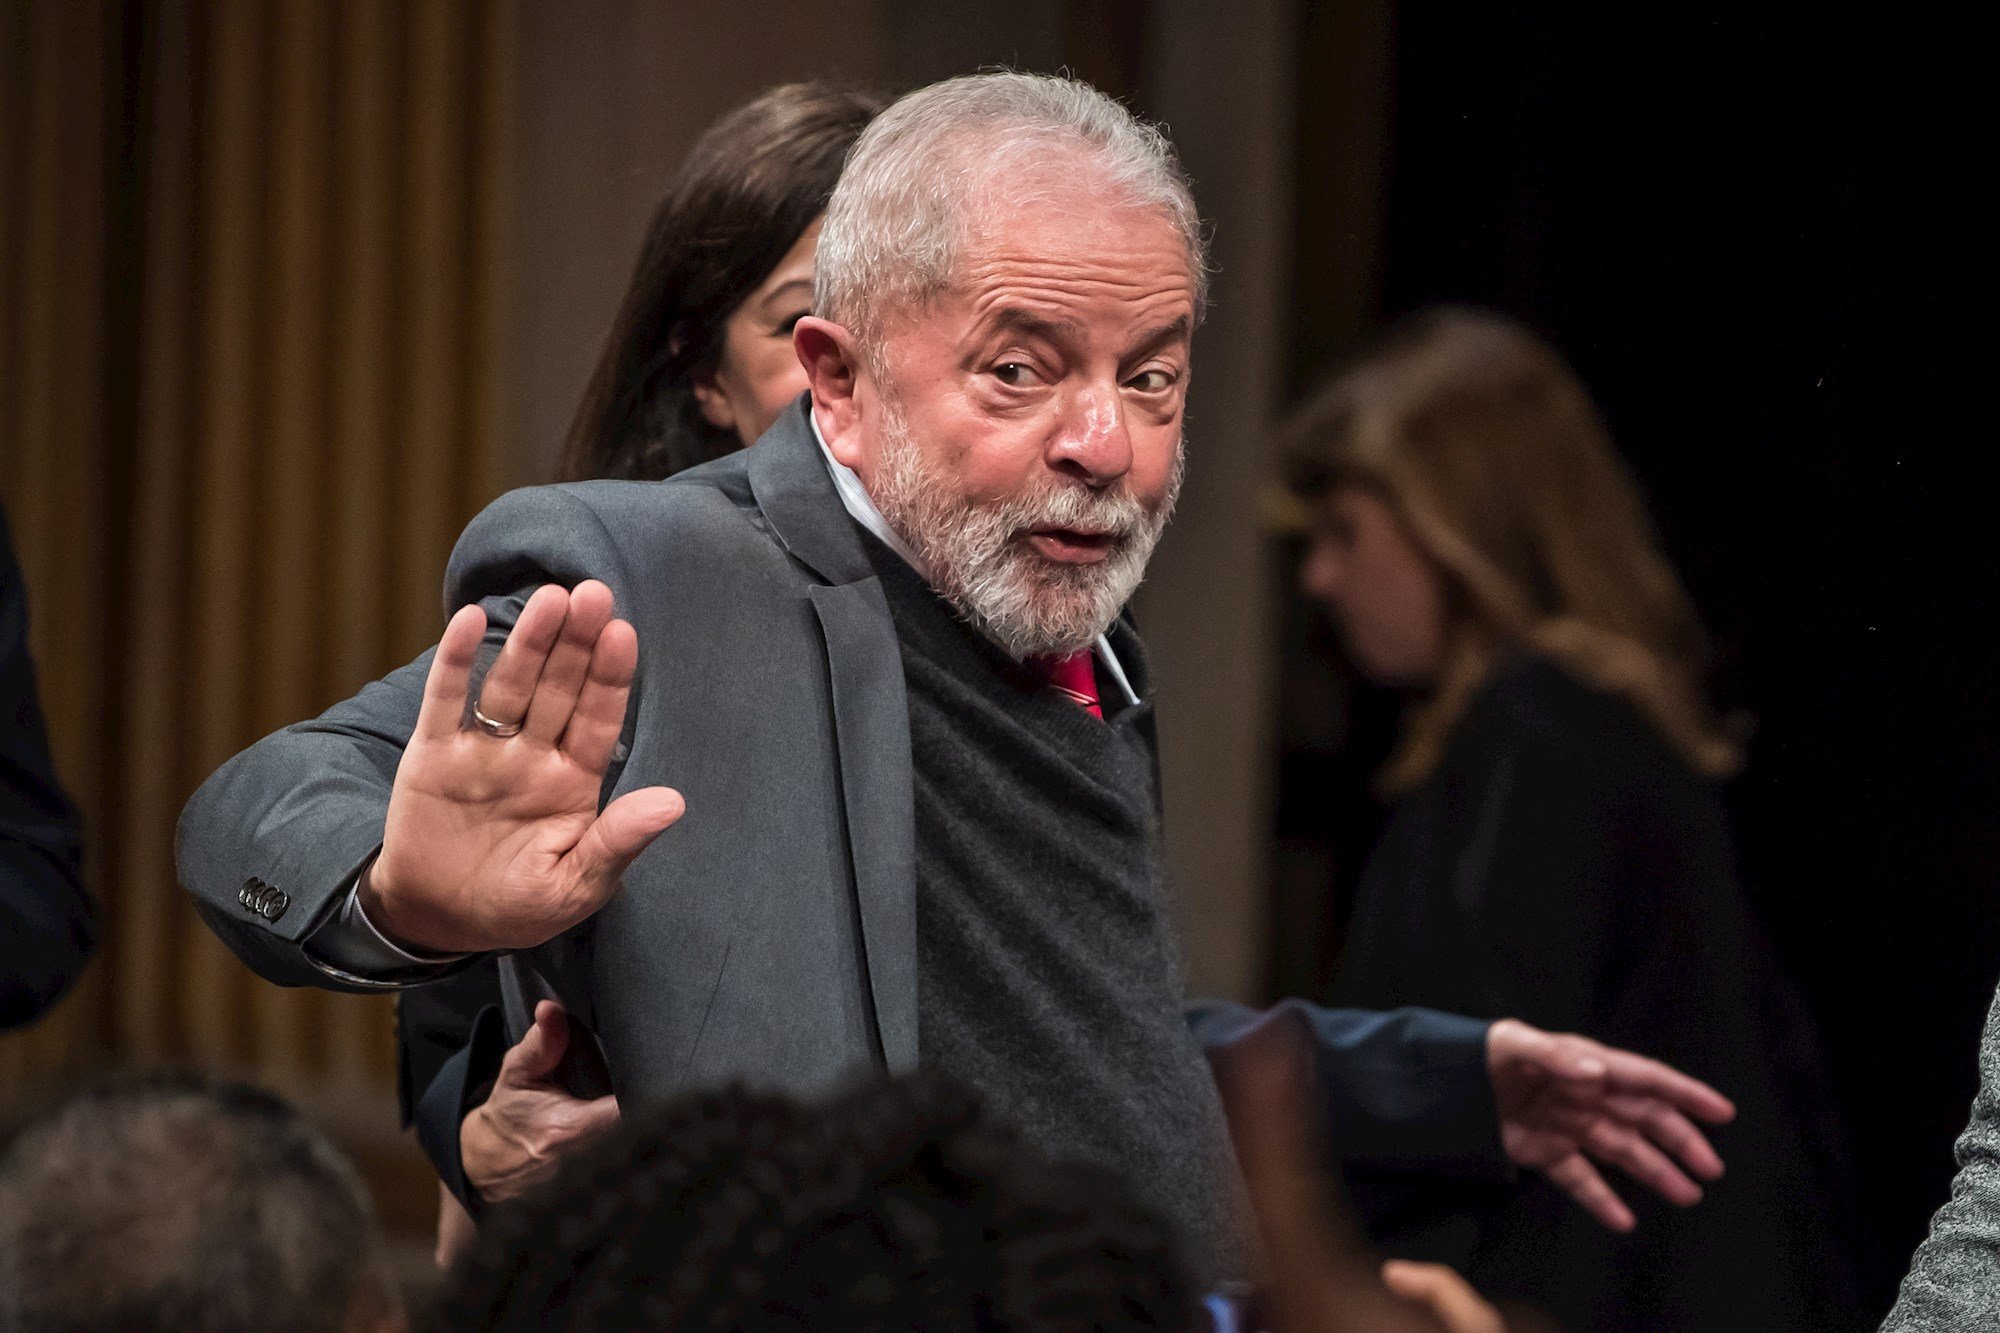 Un jutge anul·la les condemnes de Lula: podria ser candidat presidencial el 2022